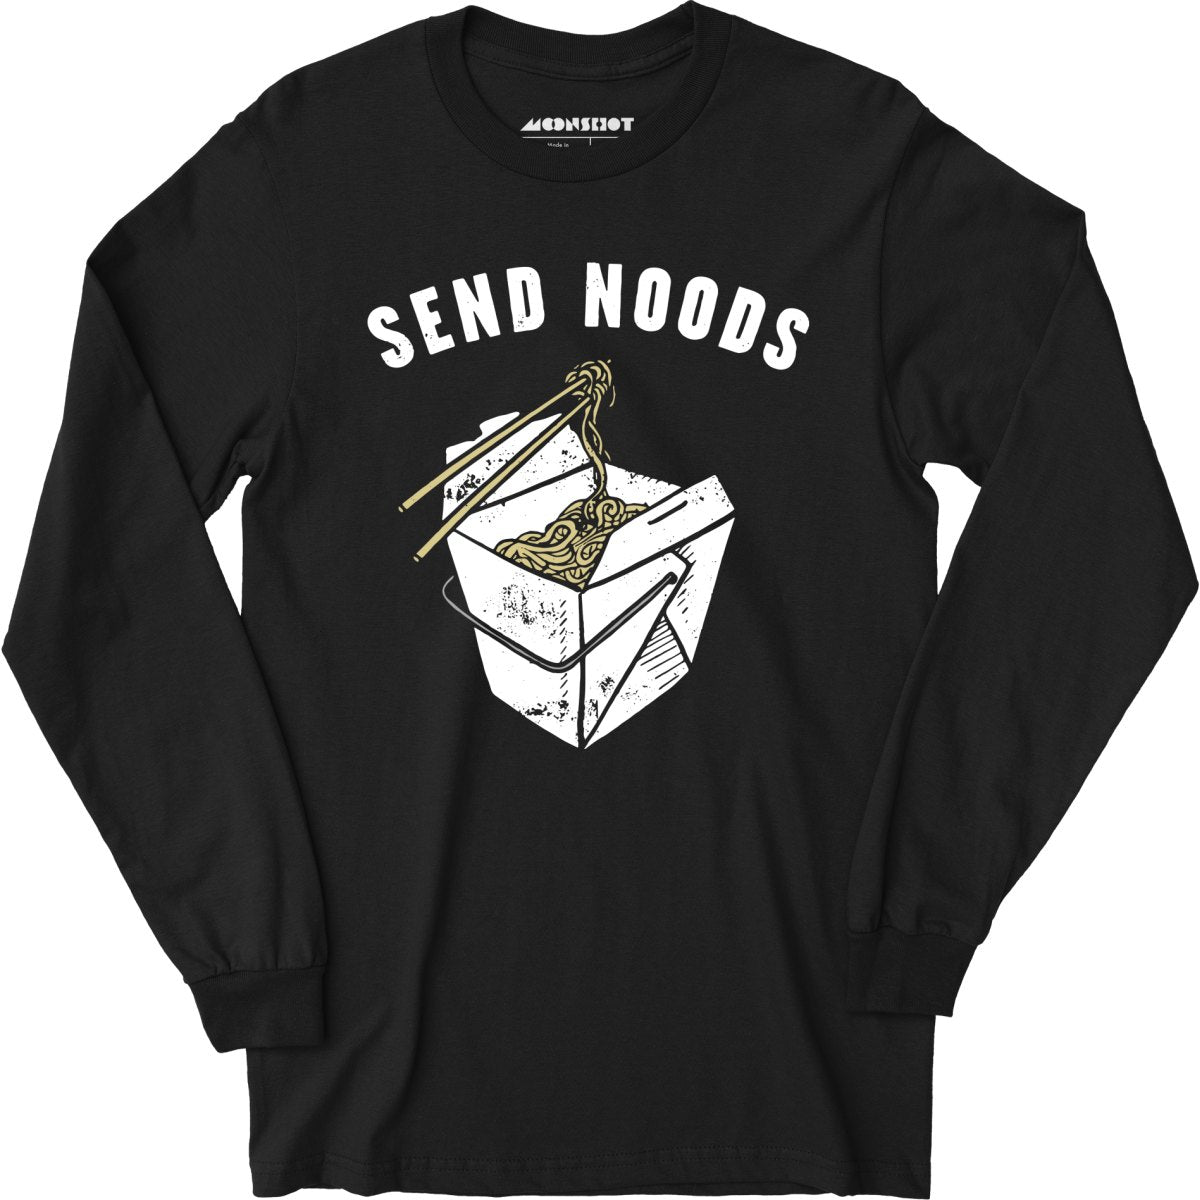 Send Noods - Long Sleeve T-Shirt